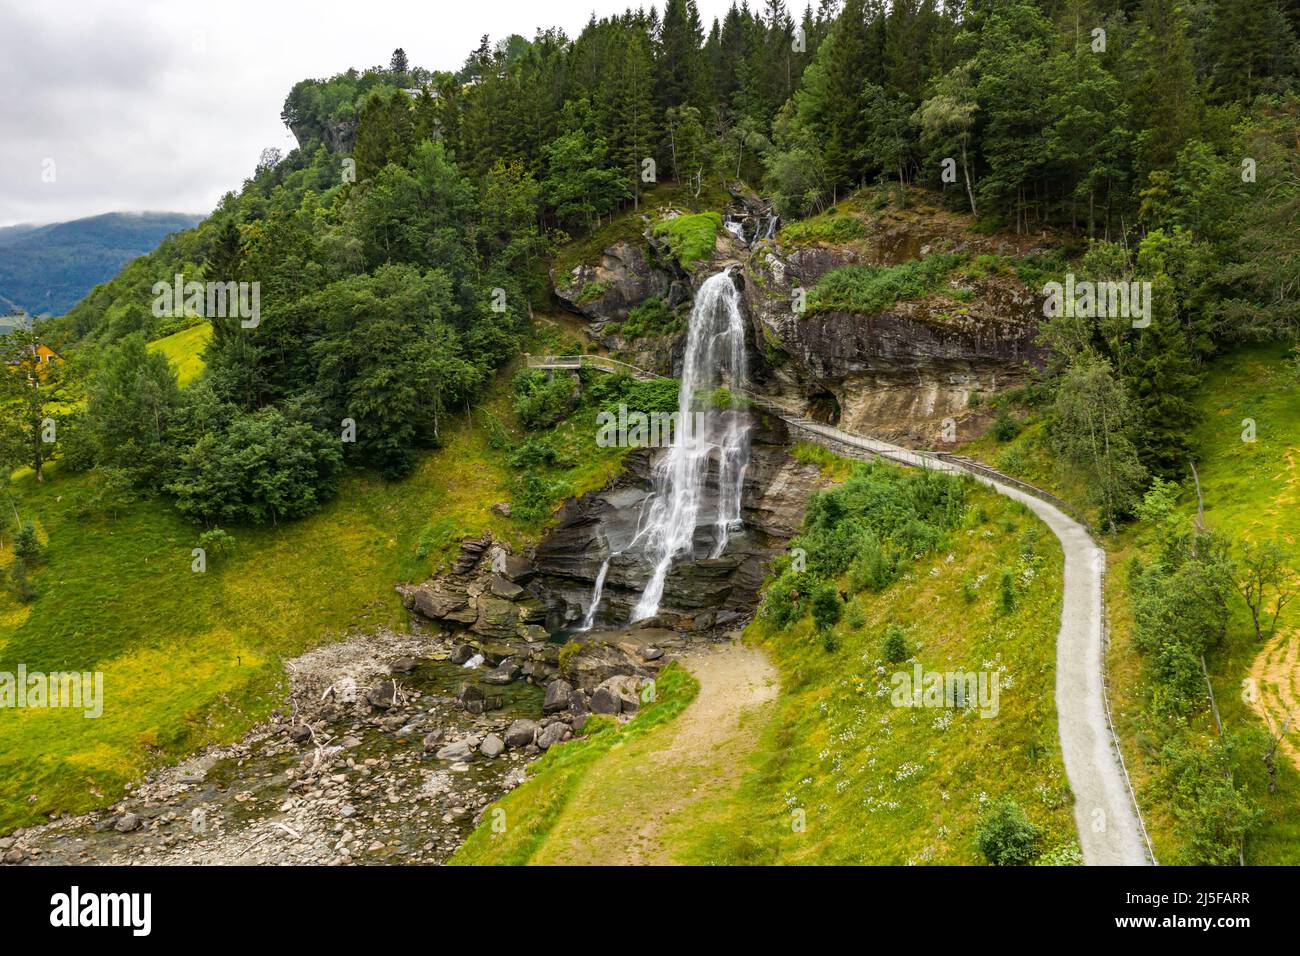 Steinsdalsfossen est une chute d'eau du village de Steine, dans la municipalité de Kvam, dans le comté de Hordaland, en Norvège. La cascade est l'une des plus vis Banque D'Images